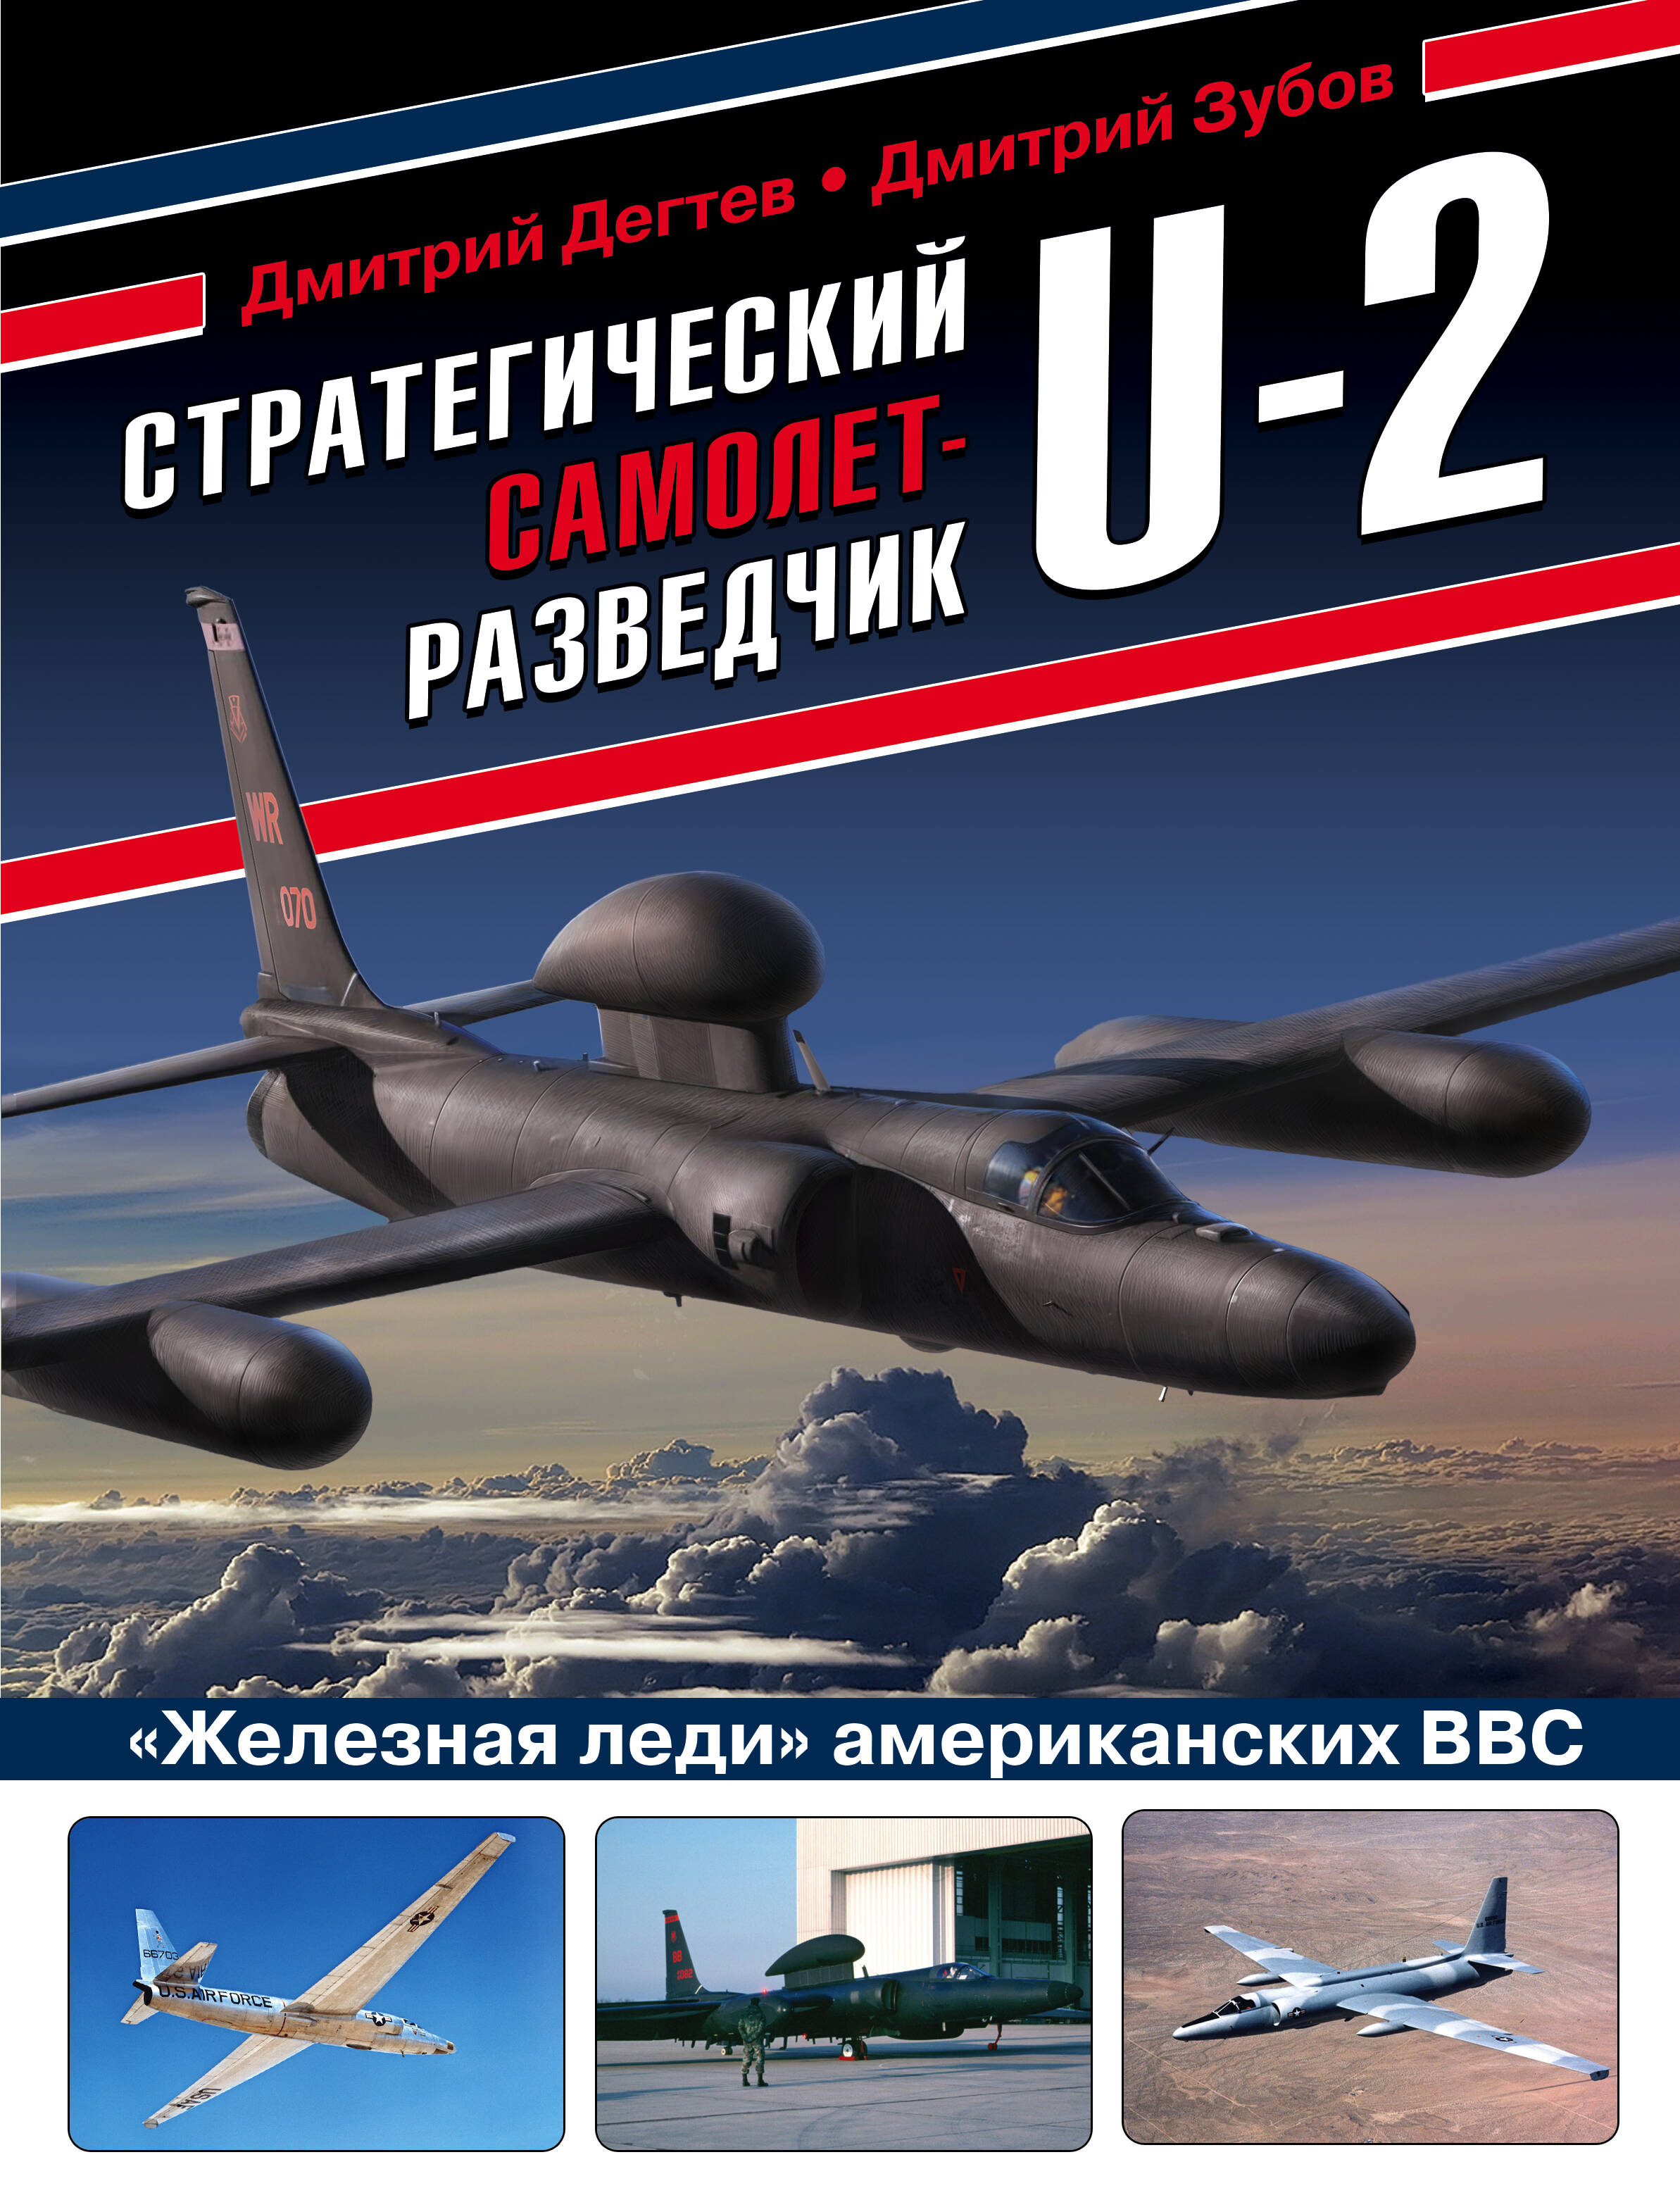 Дегтев Дмитрий Михайлович - Стратегический самолет-разведчик U-2. "Железная леди" американских ВВС